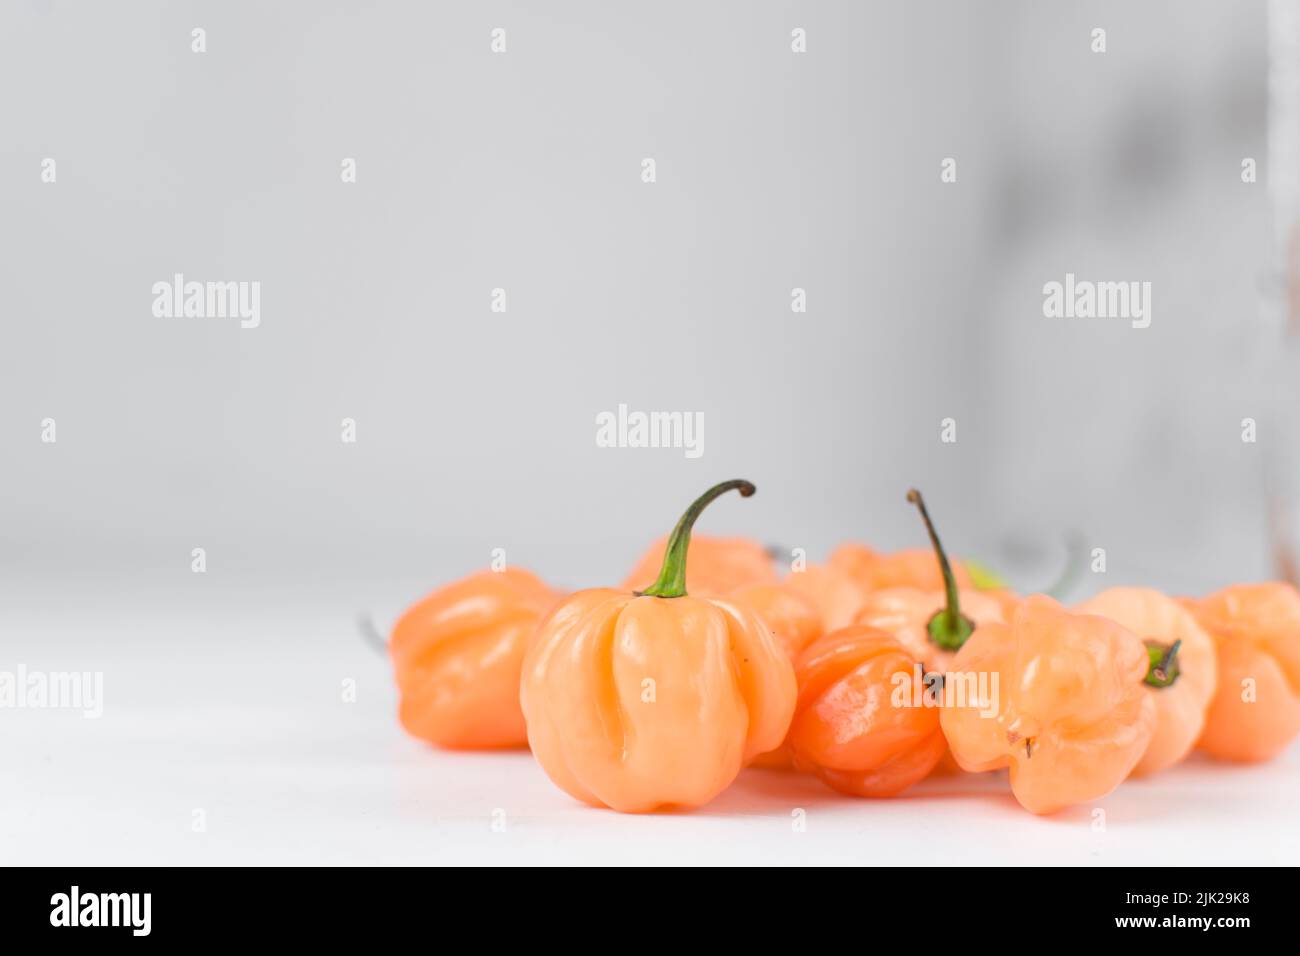 Un pimiento escotado con tallo sobre fondo blanco, pimiento fresco, pimienta naranja coral, pimiento nigeriano escocés bonete Foto de stock